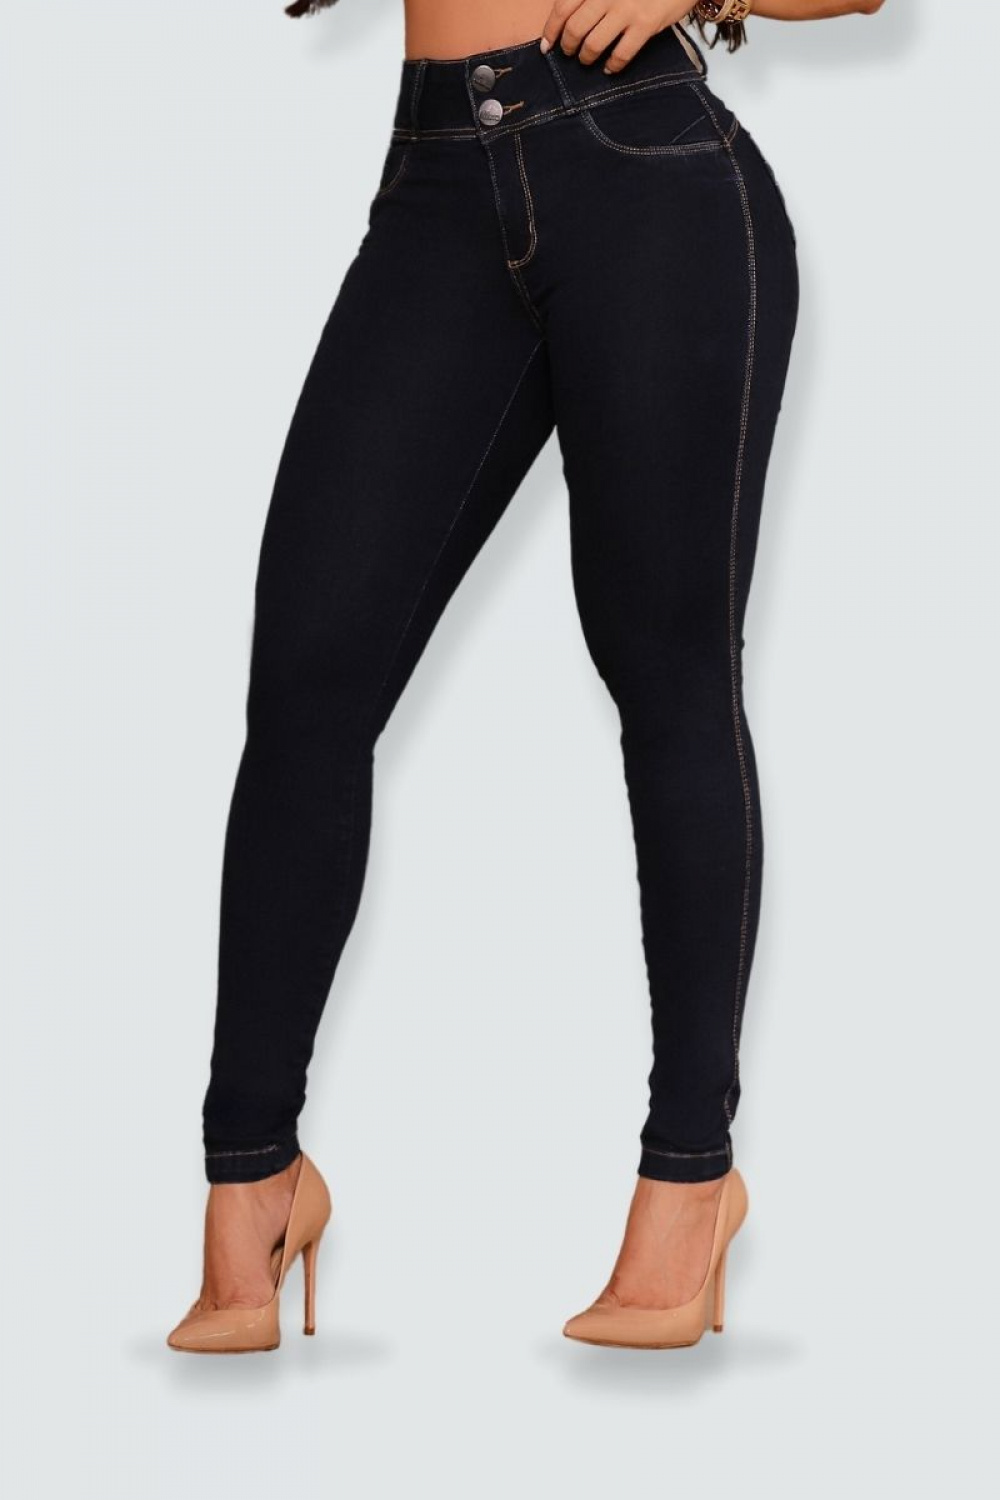 Calça jeans modeladora black stone com elastano detalhe bolso - CH